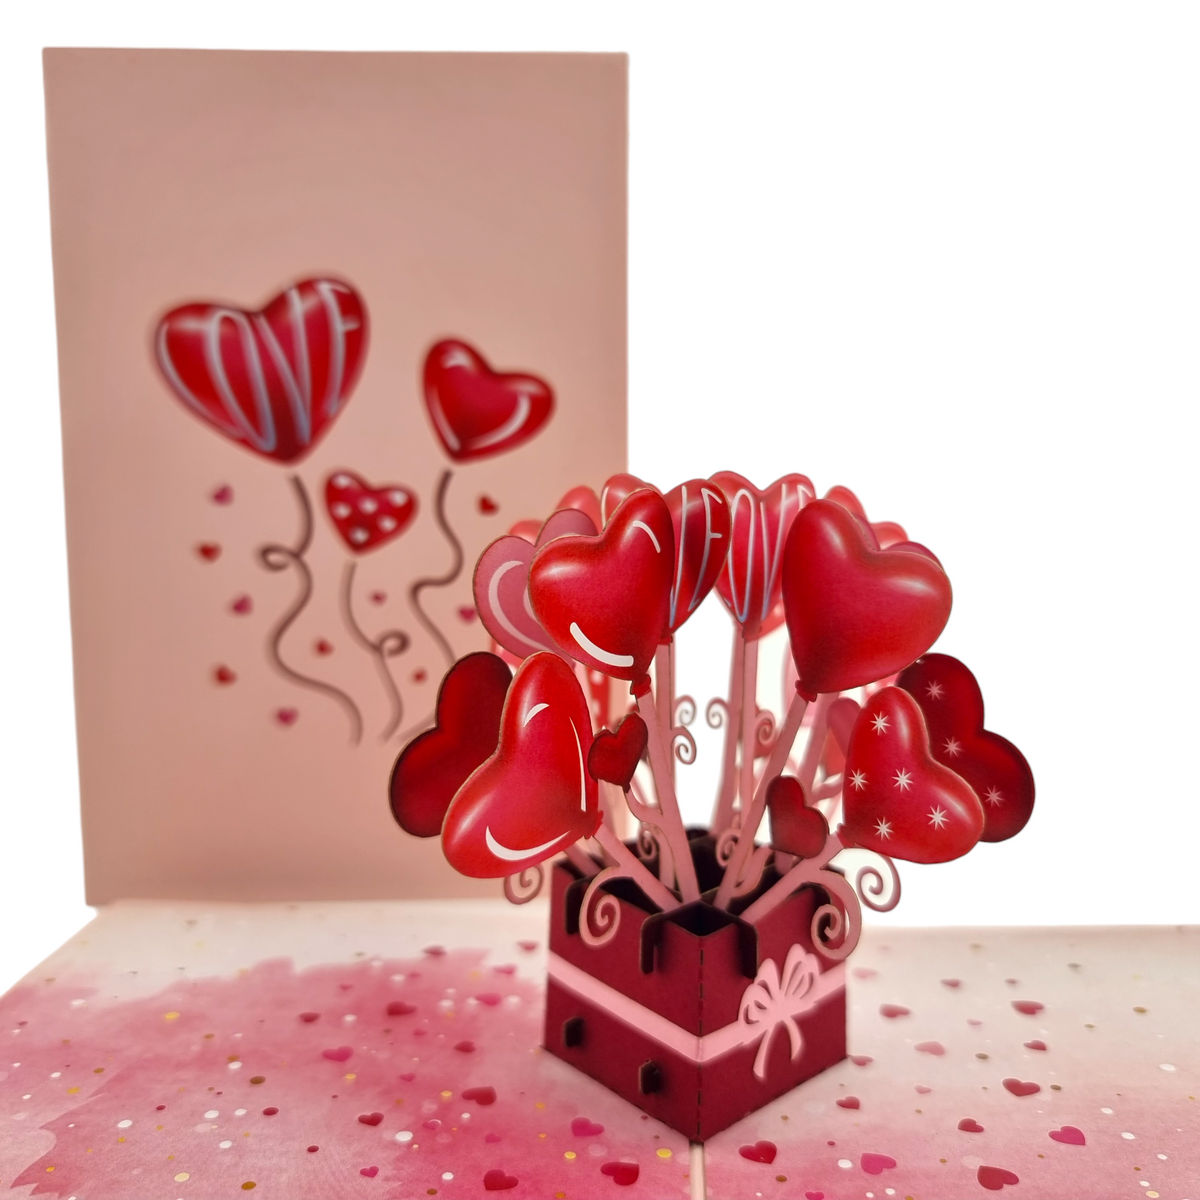 Love Heart Balloons Pop-Up Card